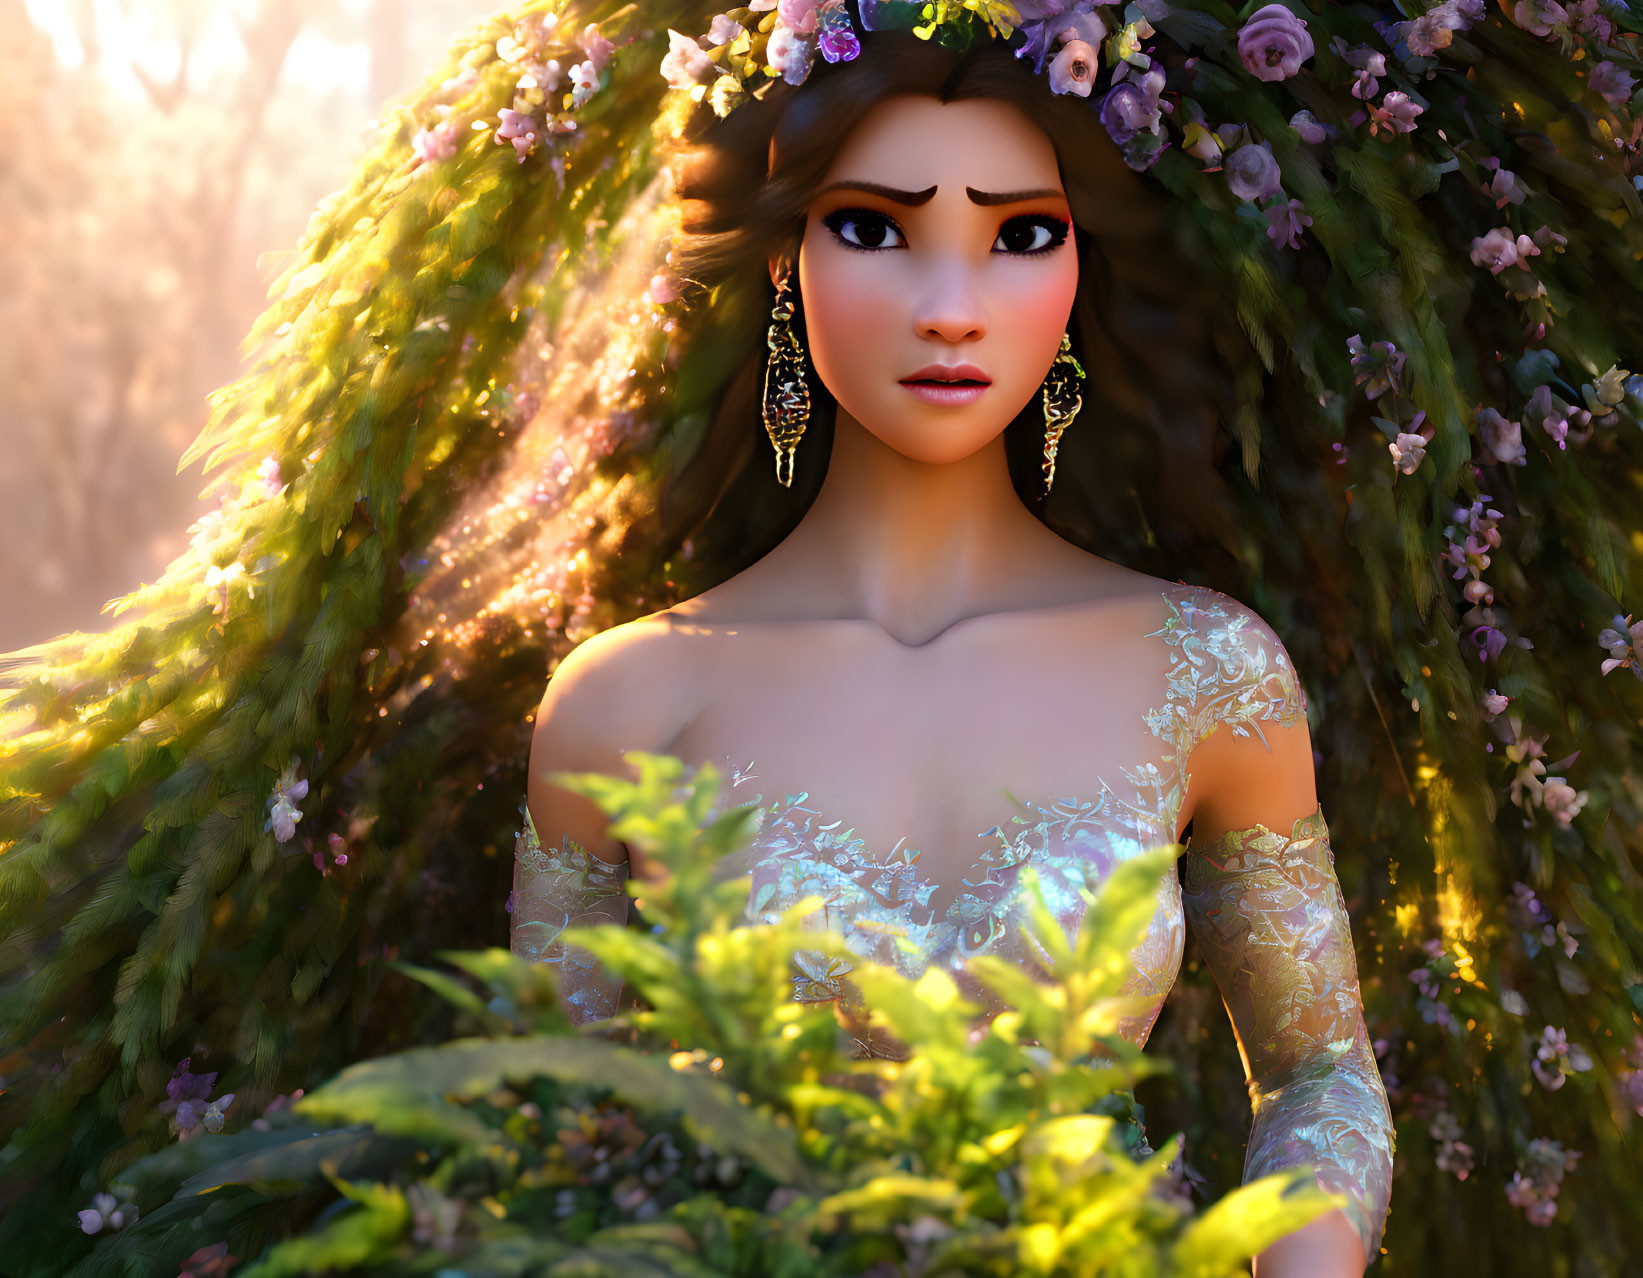 'Persephone, Goddess of Spring'